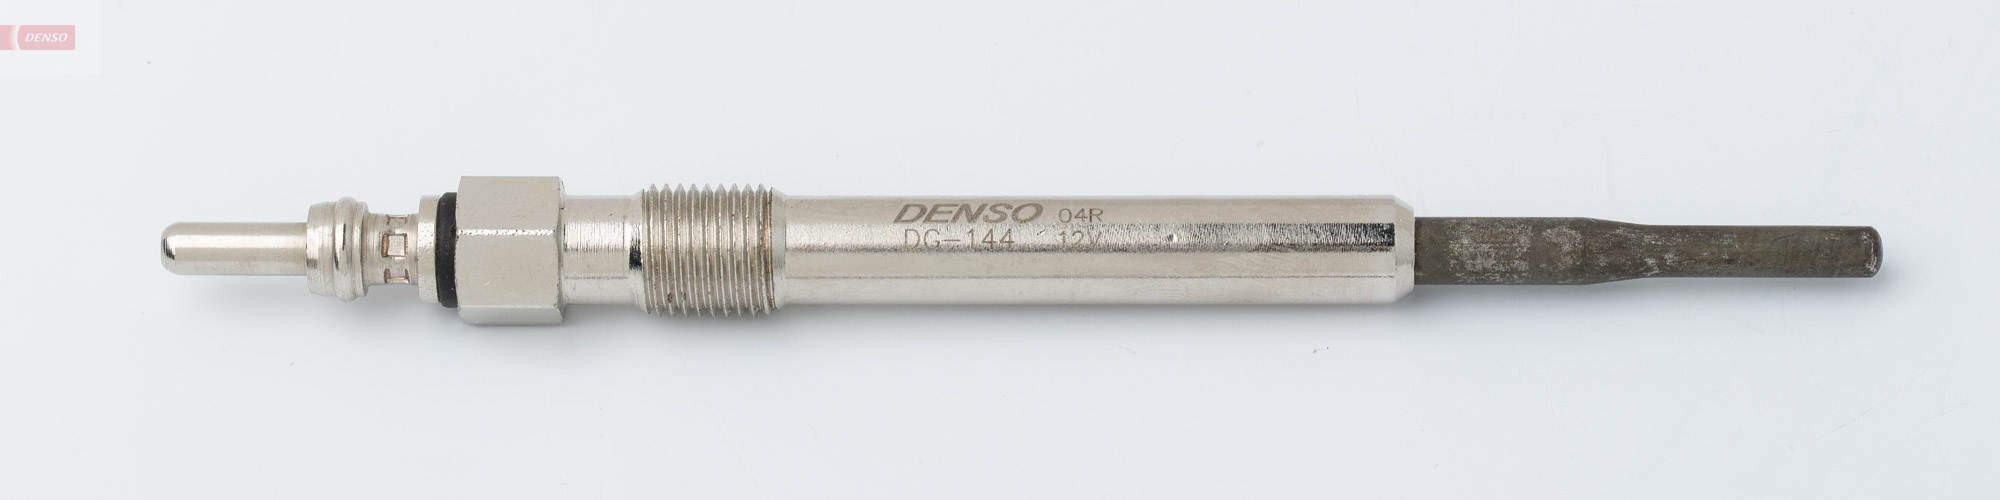 DENSO DEN DG-144 Izzítógyertya